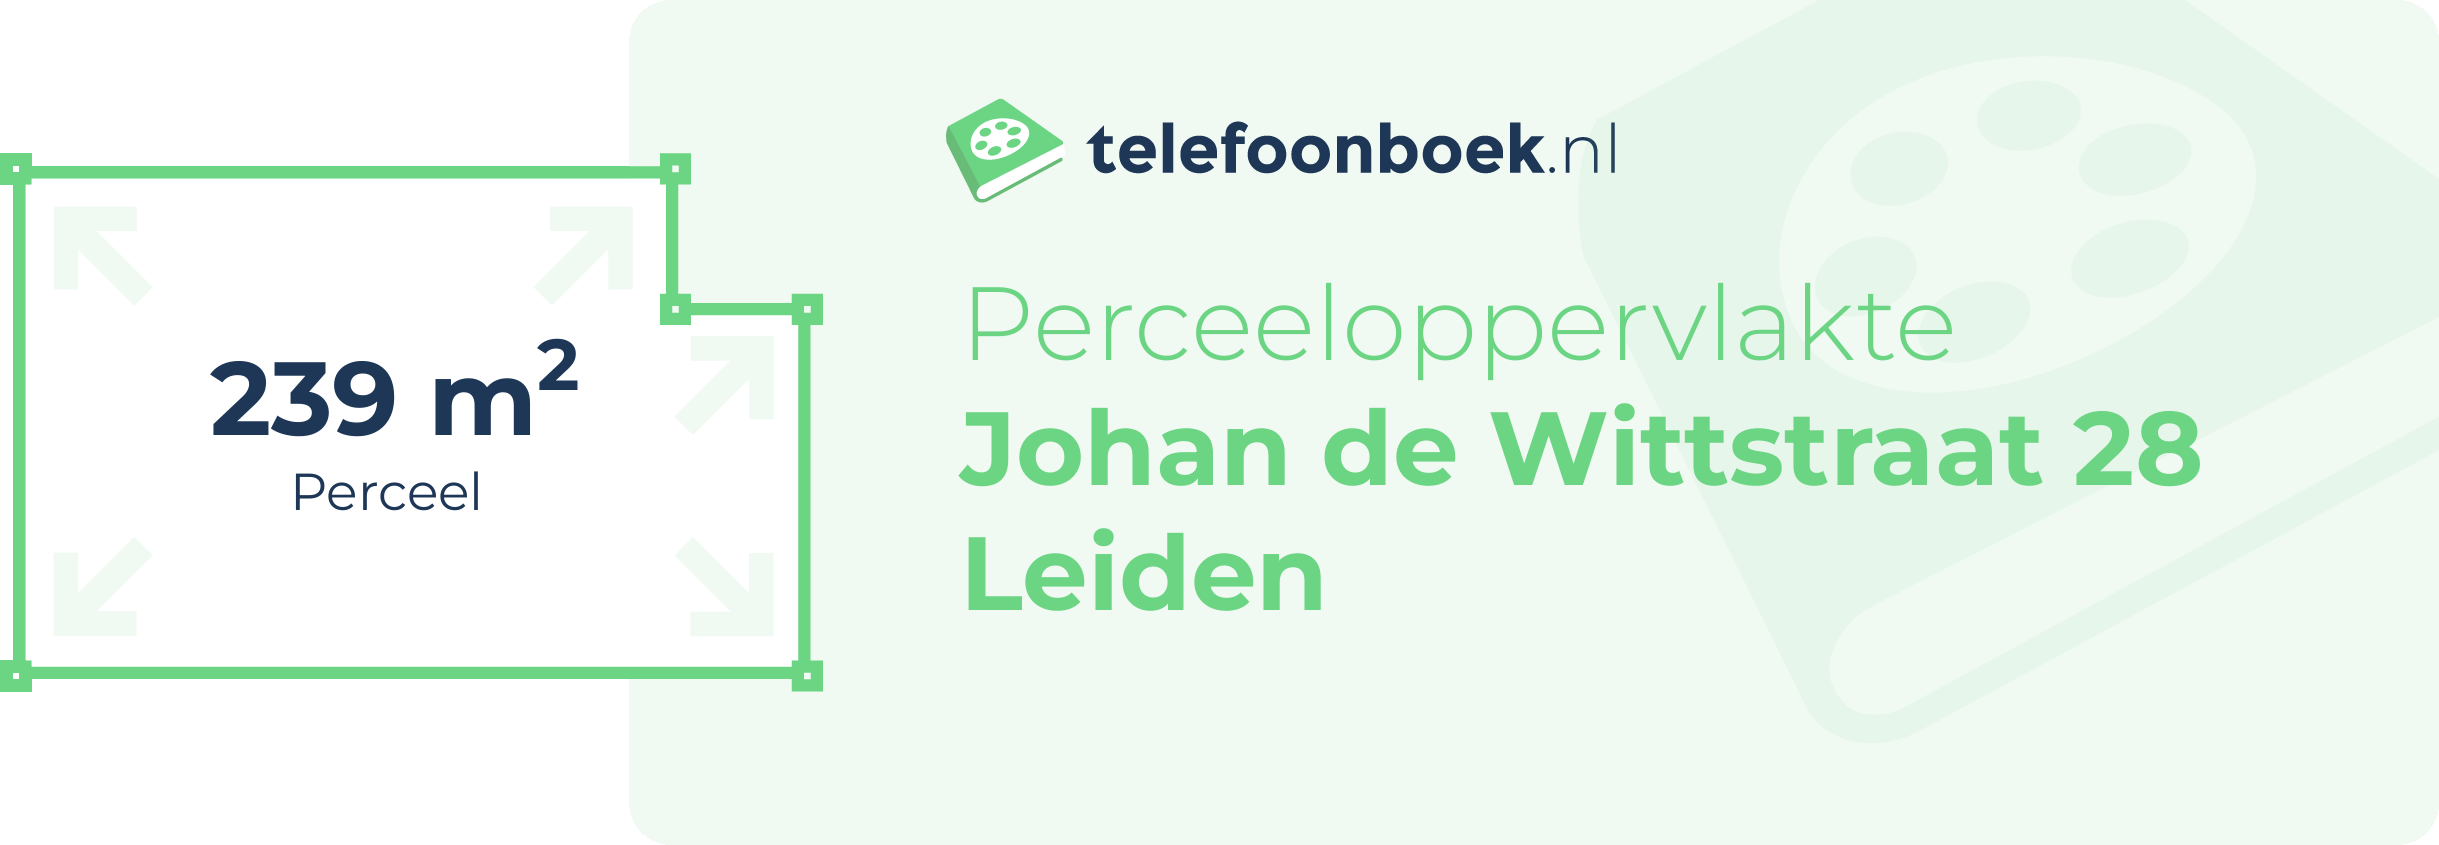 Perceeloppervlakte Johan De Wittstraat 28 Leiden